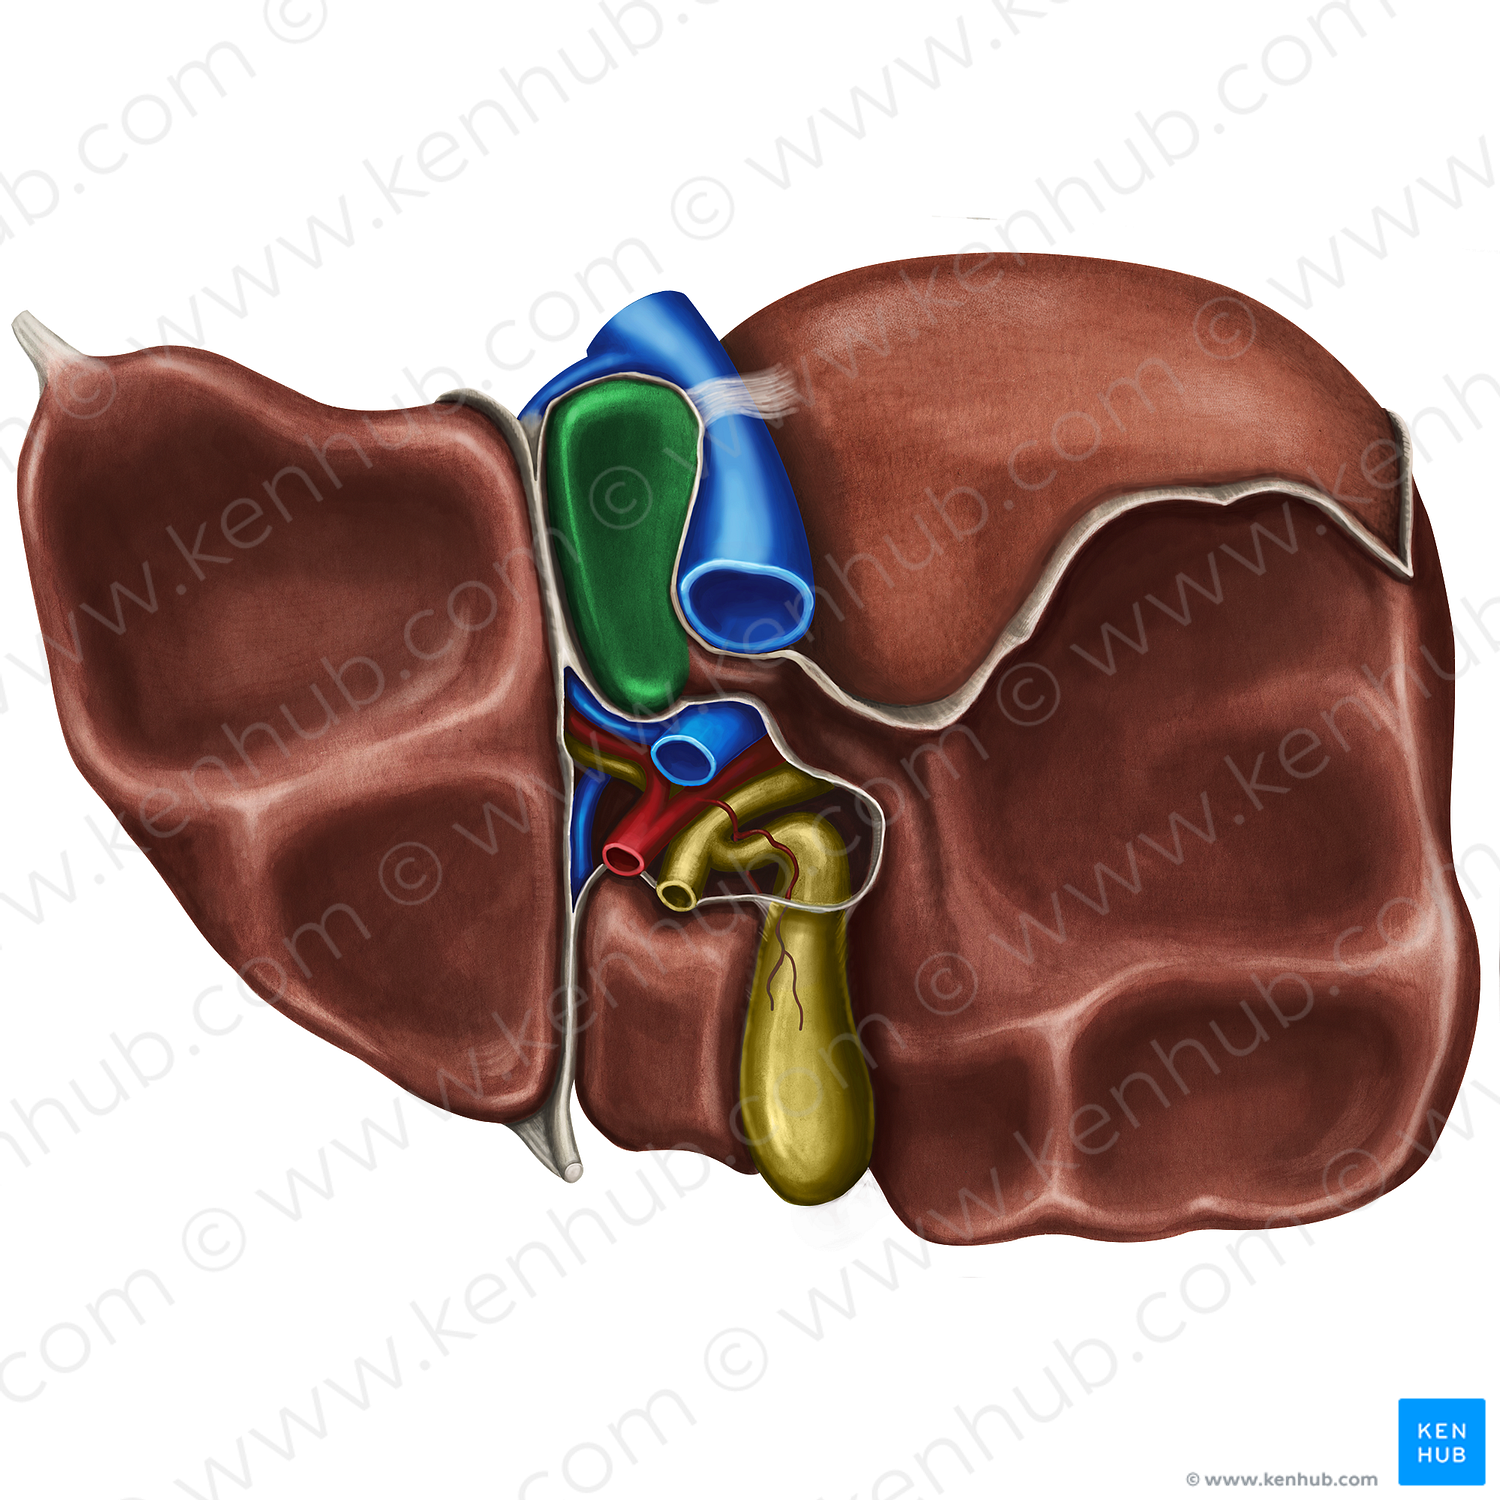 Caudate lobe of liver (#4775)